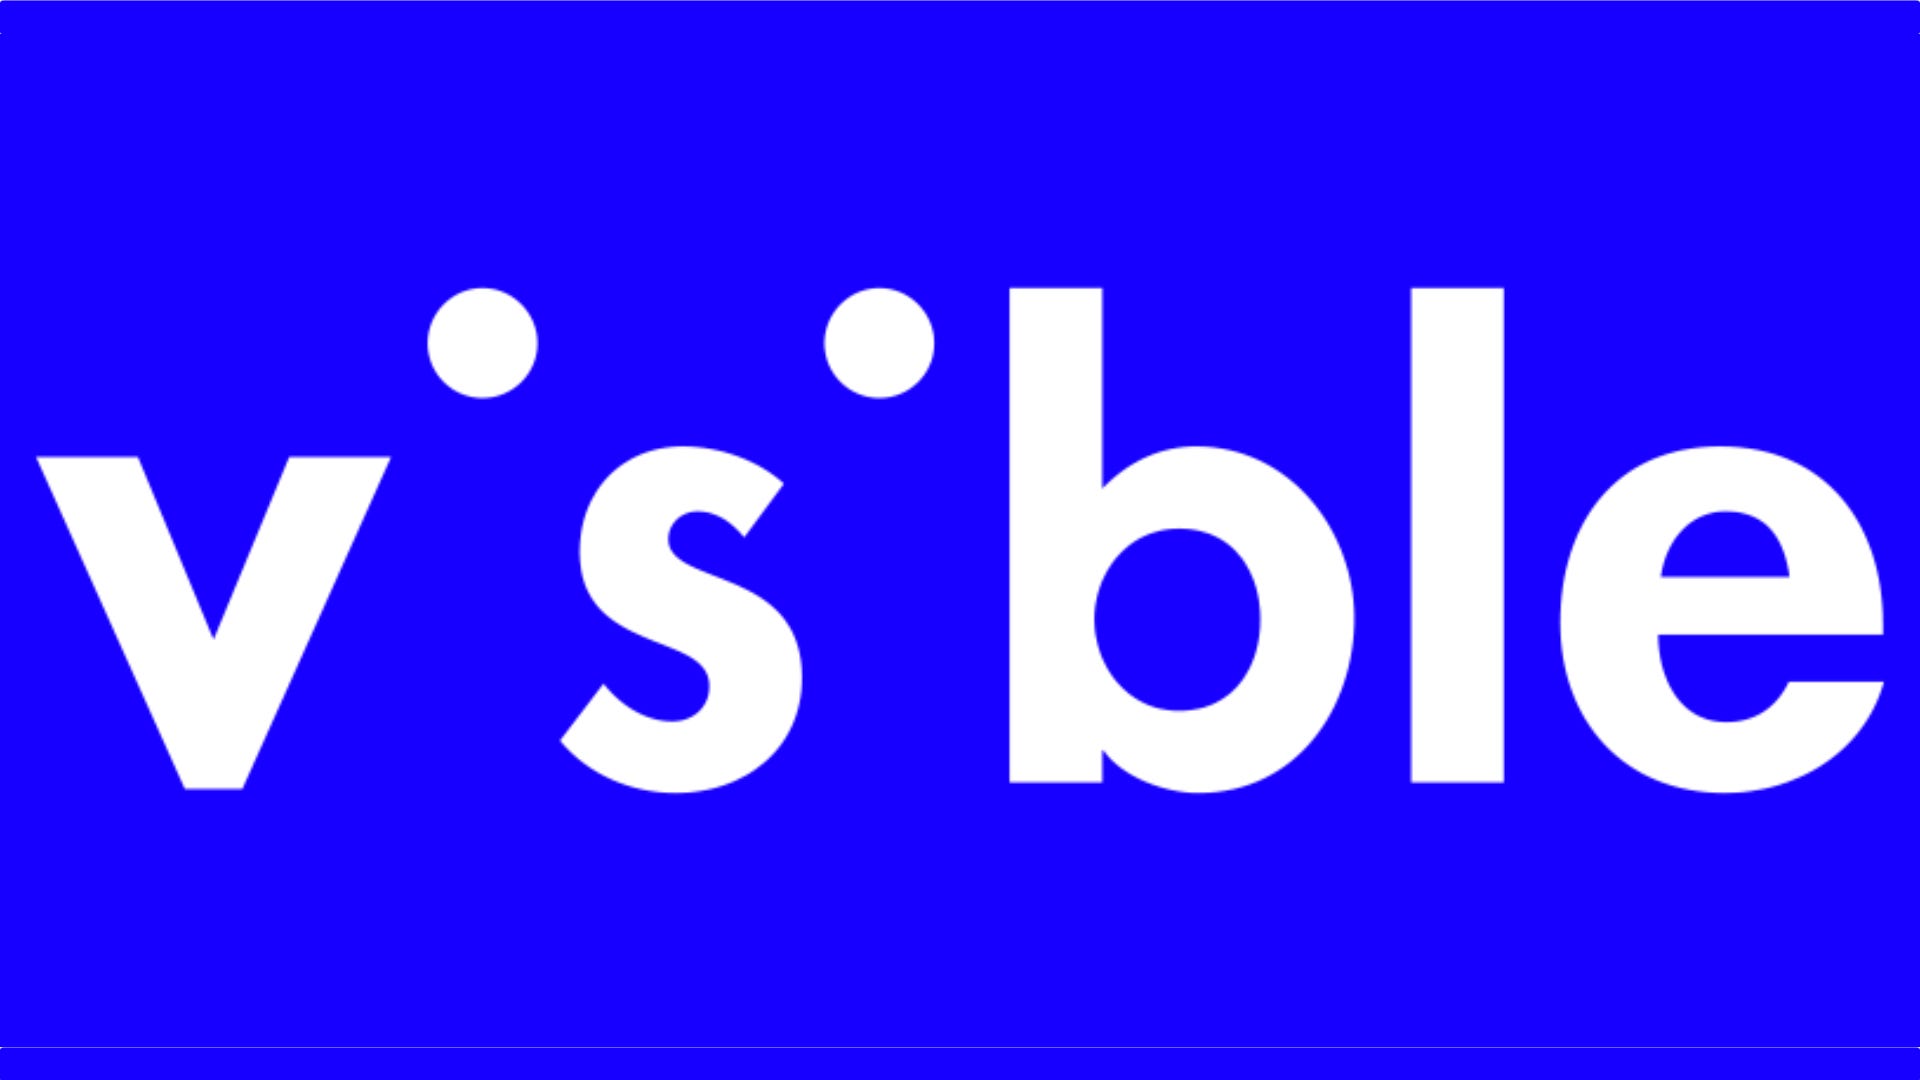 Vsble (Hiển thị) Logo không giới hạn trên nền xanh lam.